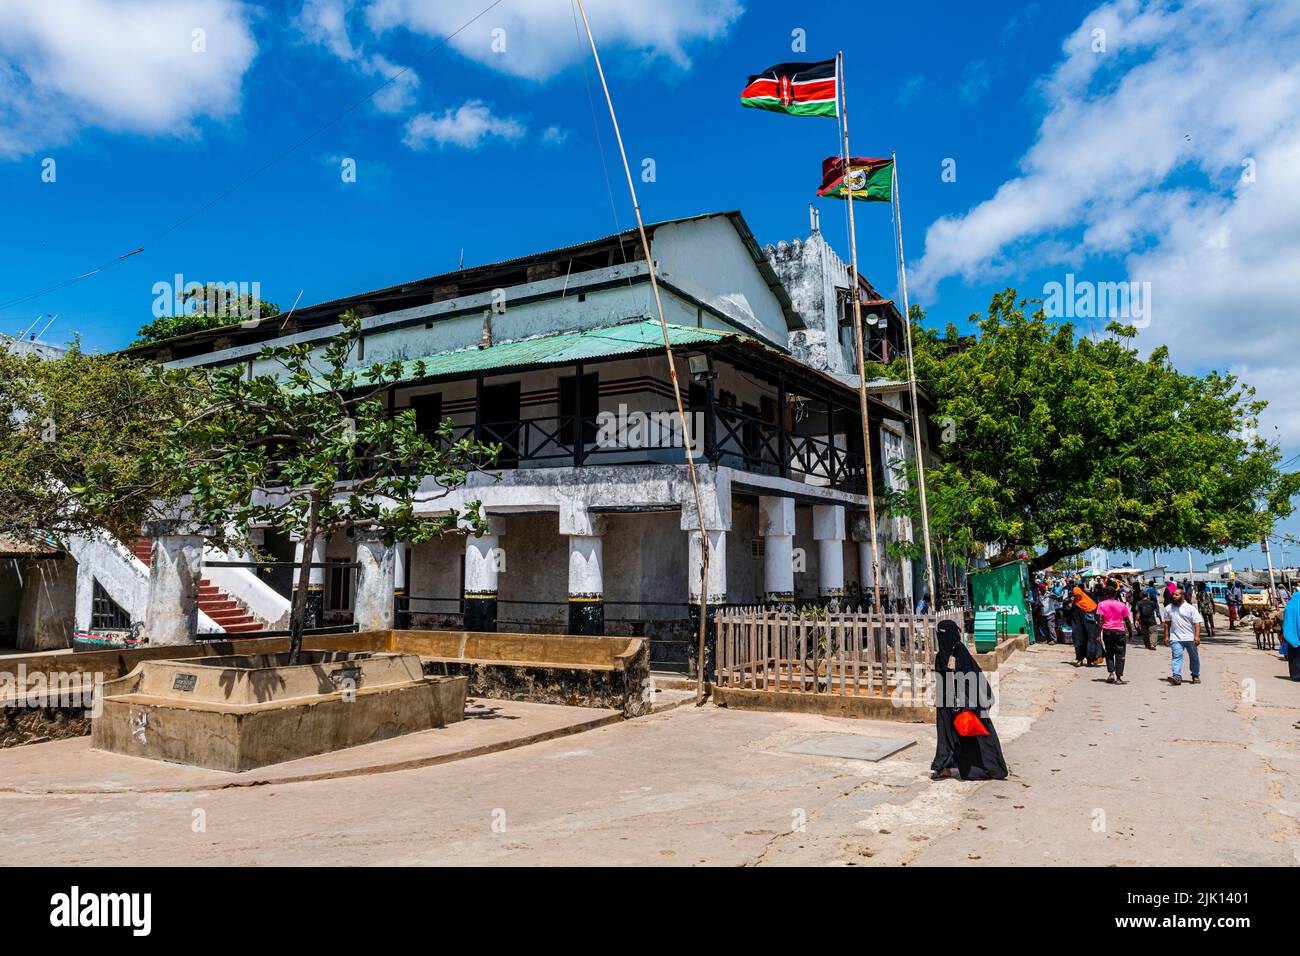 Ville de Lamu, site classé au patrimoine mondial de l'UNESCO, île de Lamu, Kenya Banque D'Images